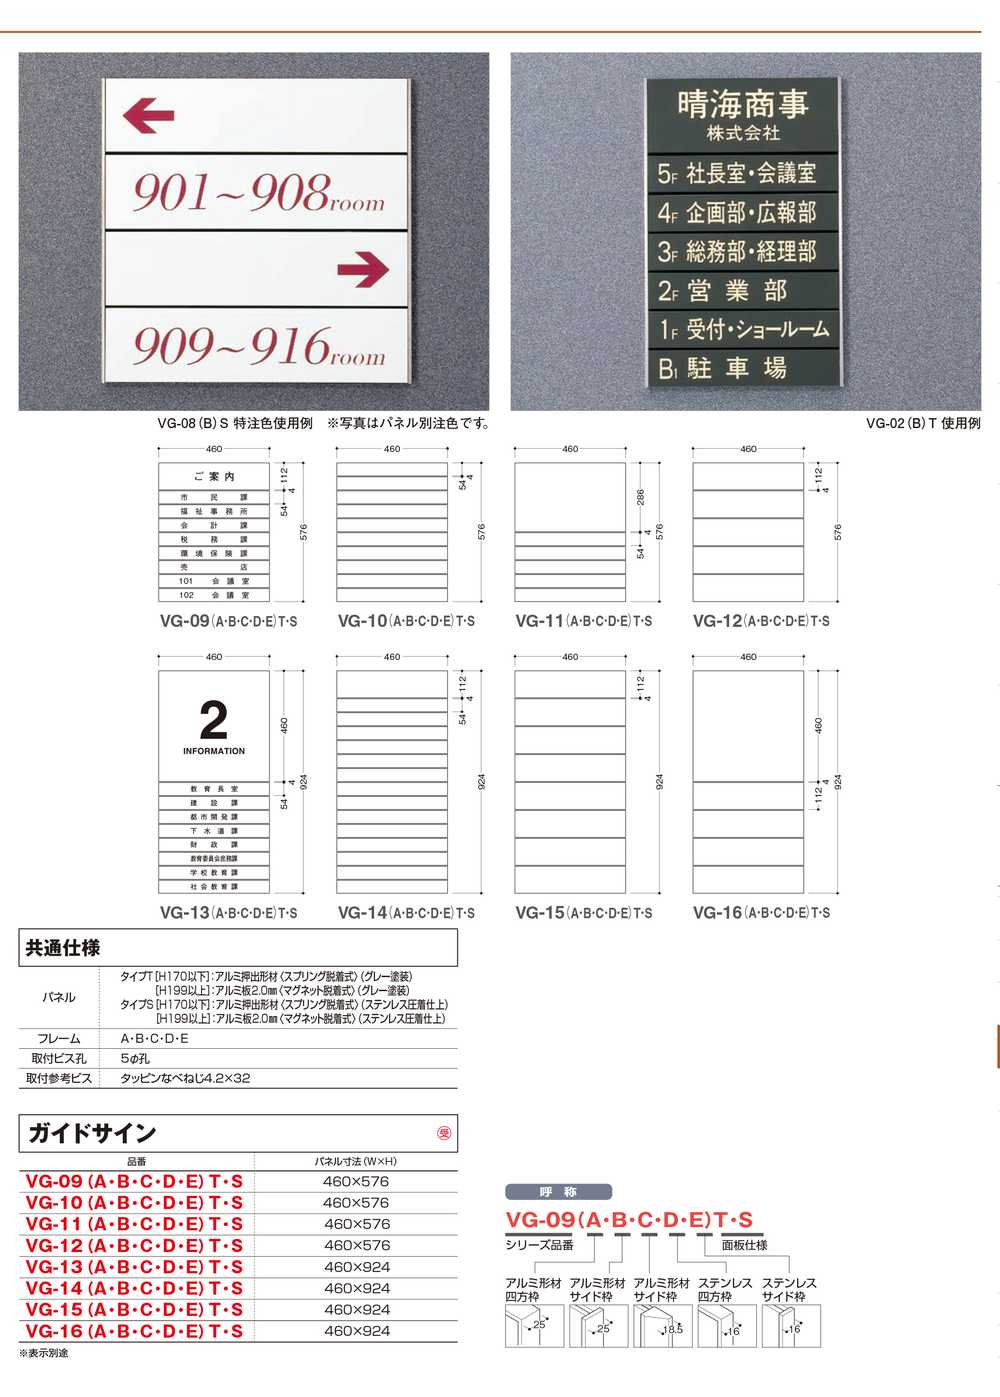 タテヤマアドバンス ガイドサイン(T面板) VG-09 TYPE C 5090505(特注CD) VG-09(C)T 受注生産品 激安特価販売 